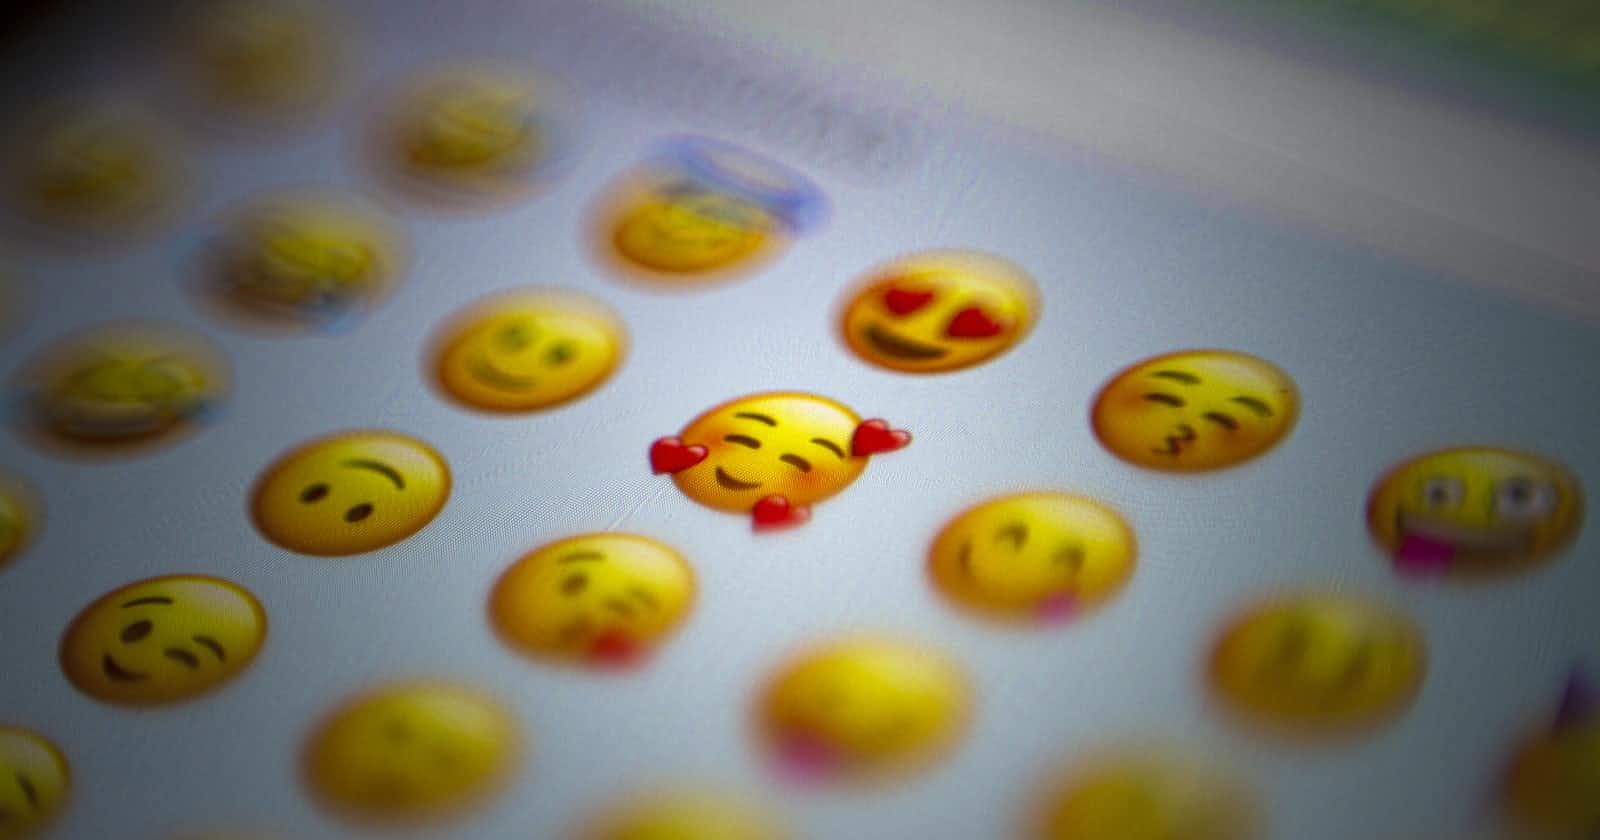 Liberating Custom Slack Emojis